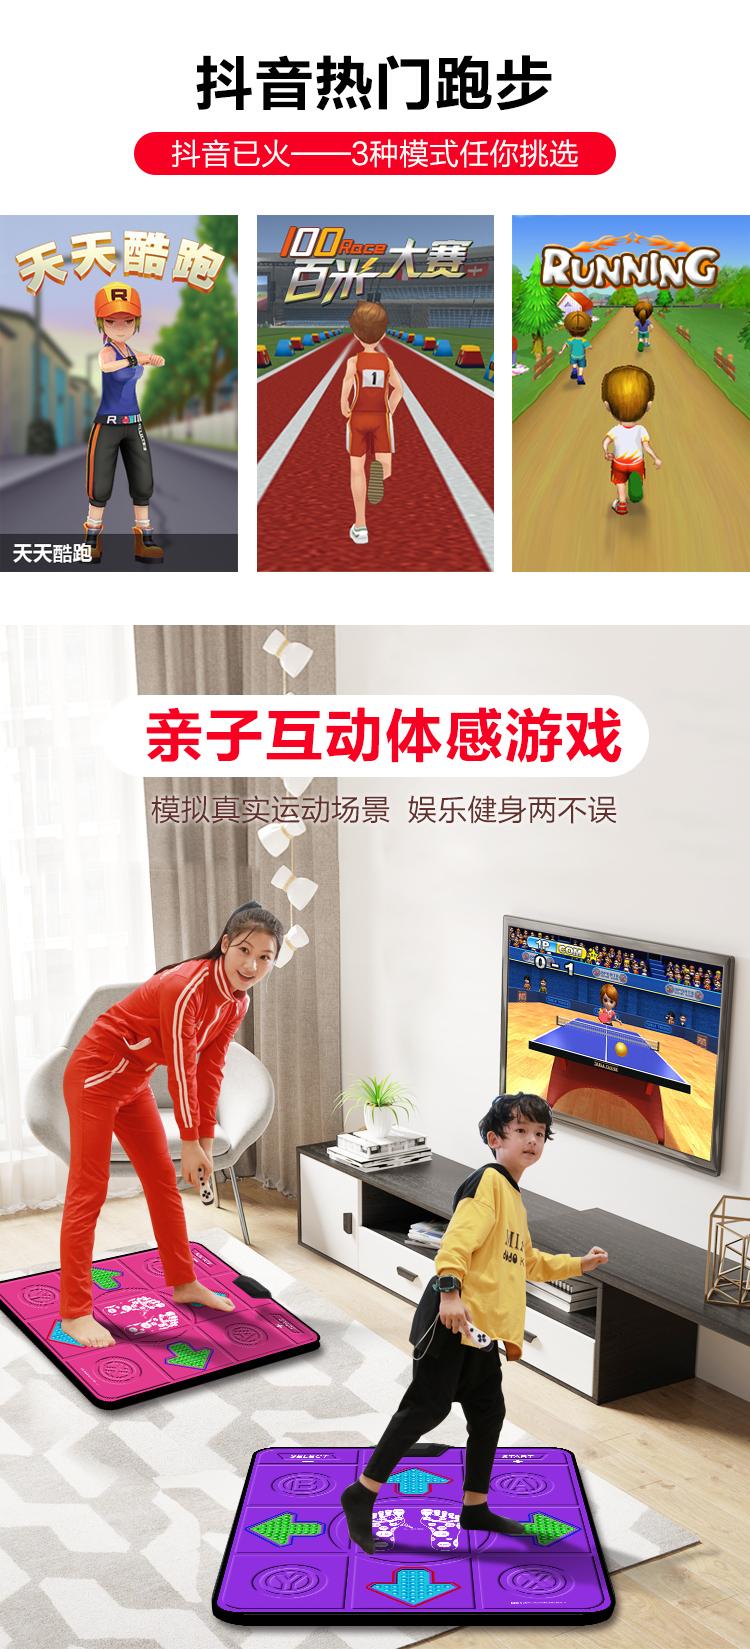 Dance Master Wireless HD HDMI Single Double Dance Mat Trang chủ Máy nhảy Somatosensory TV Máy chạy bộ giảm cân - Dance pad